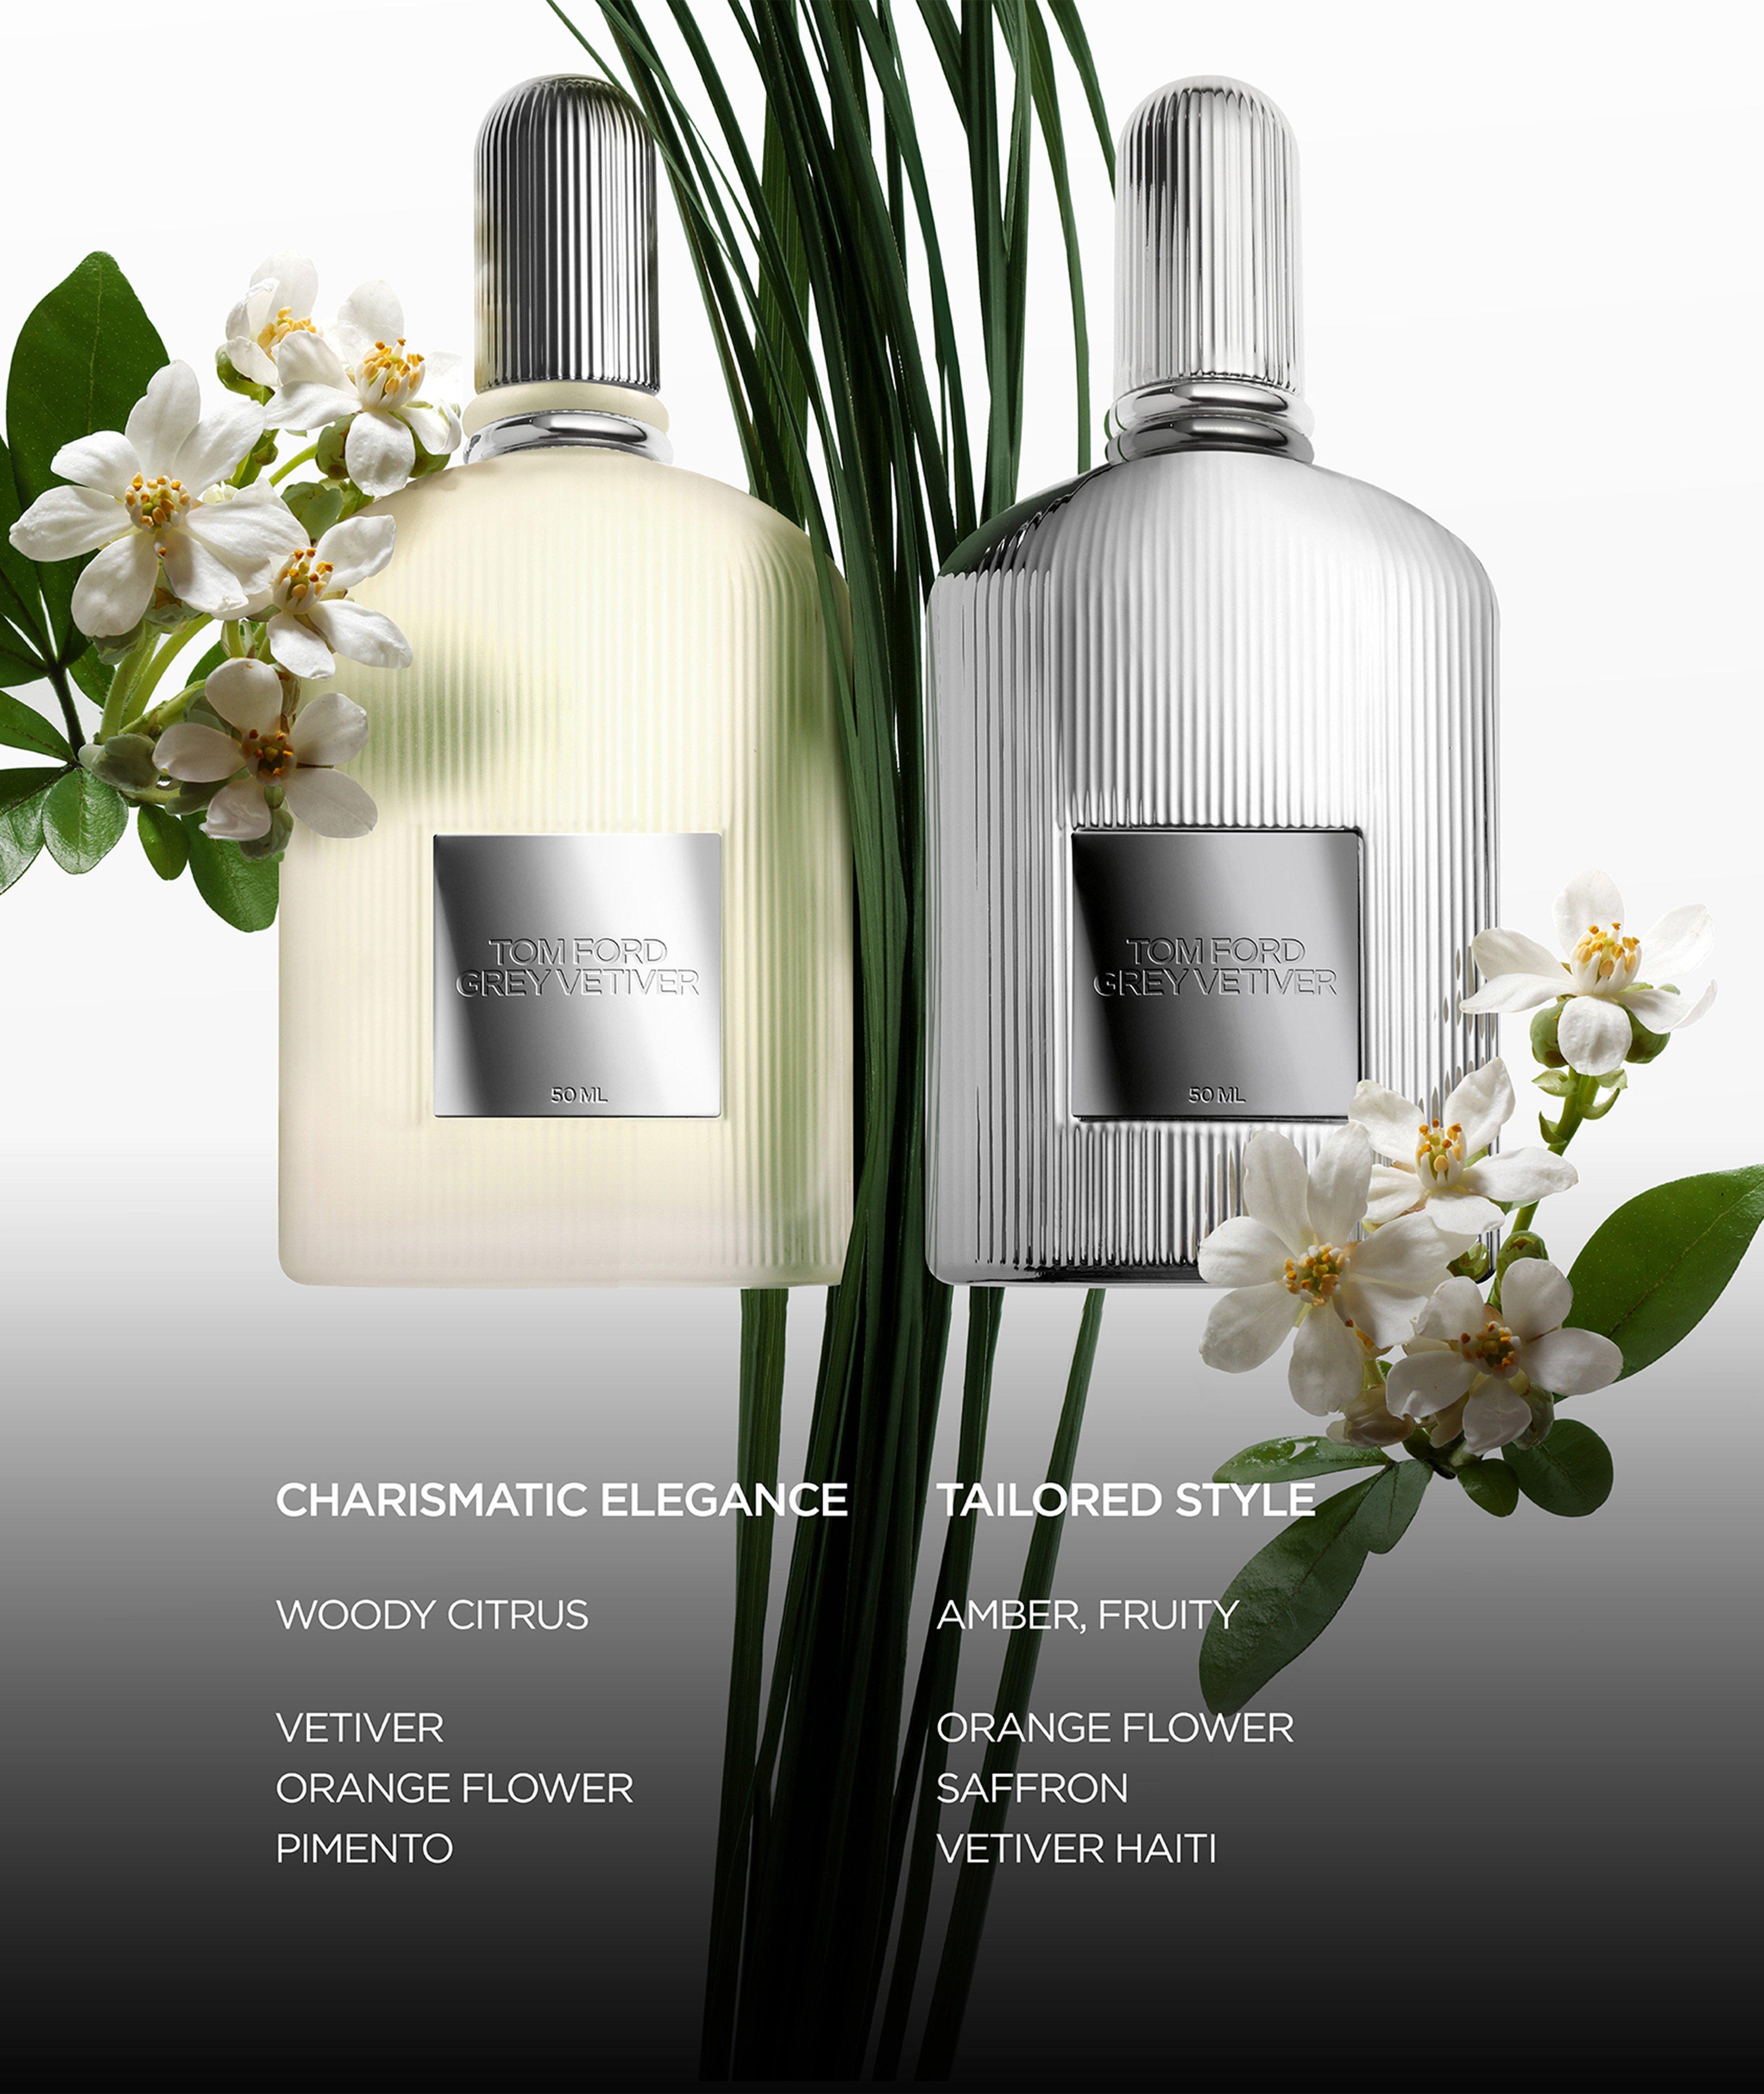 TOM FORD Grey Vetiver Eau De Parfum 50ml | Fragrance | Harry Rosen